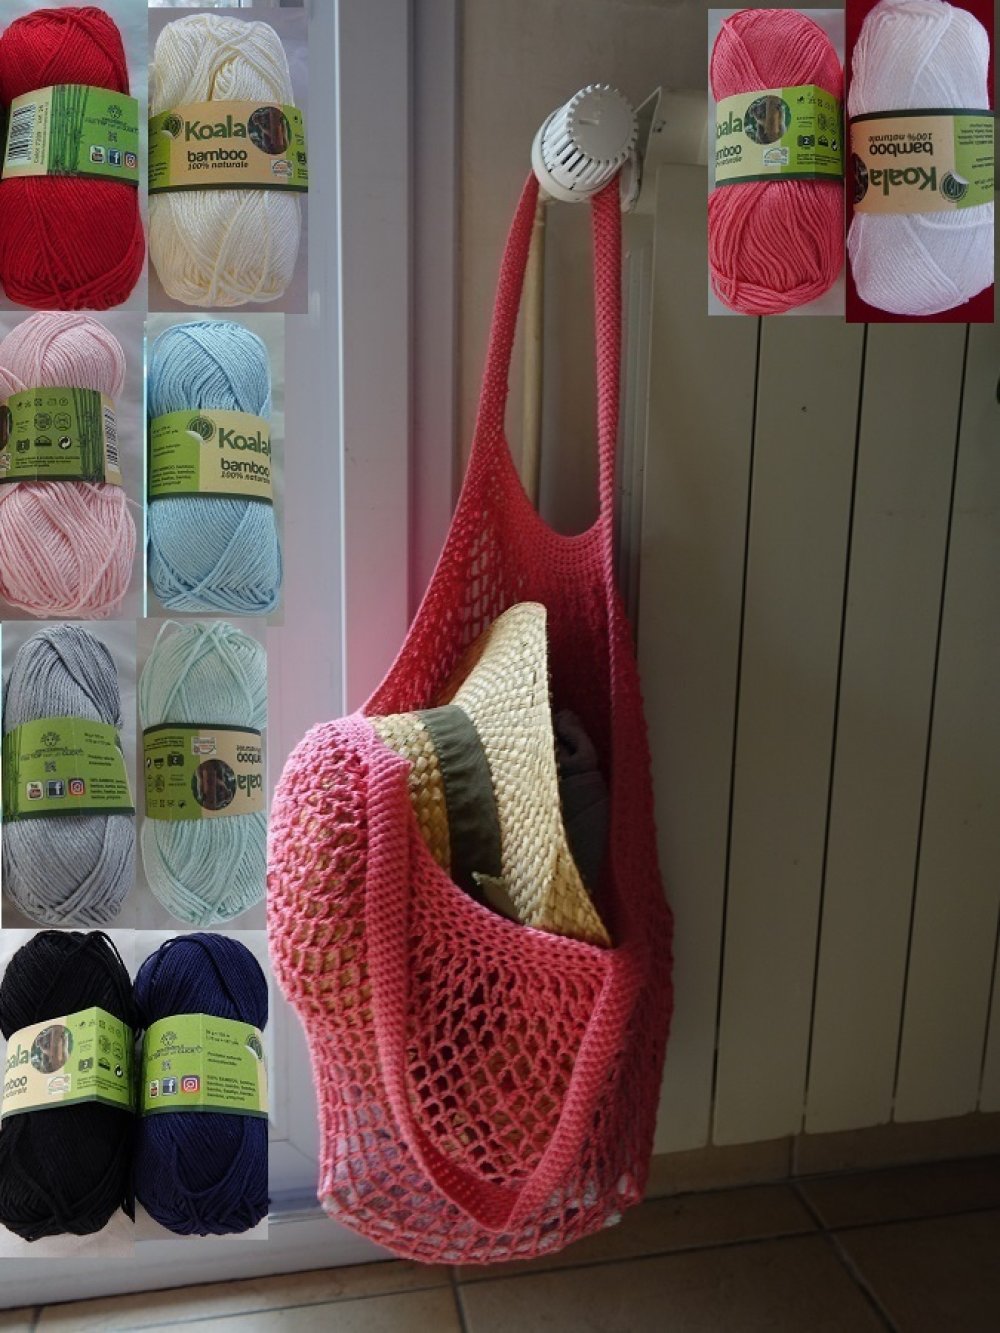 1 kit coton filet à provision ,sac de plage ,etc..grande capacité couleurs  au choix au crochet en coton perlé - Un grand marché